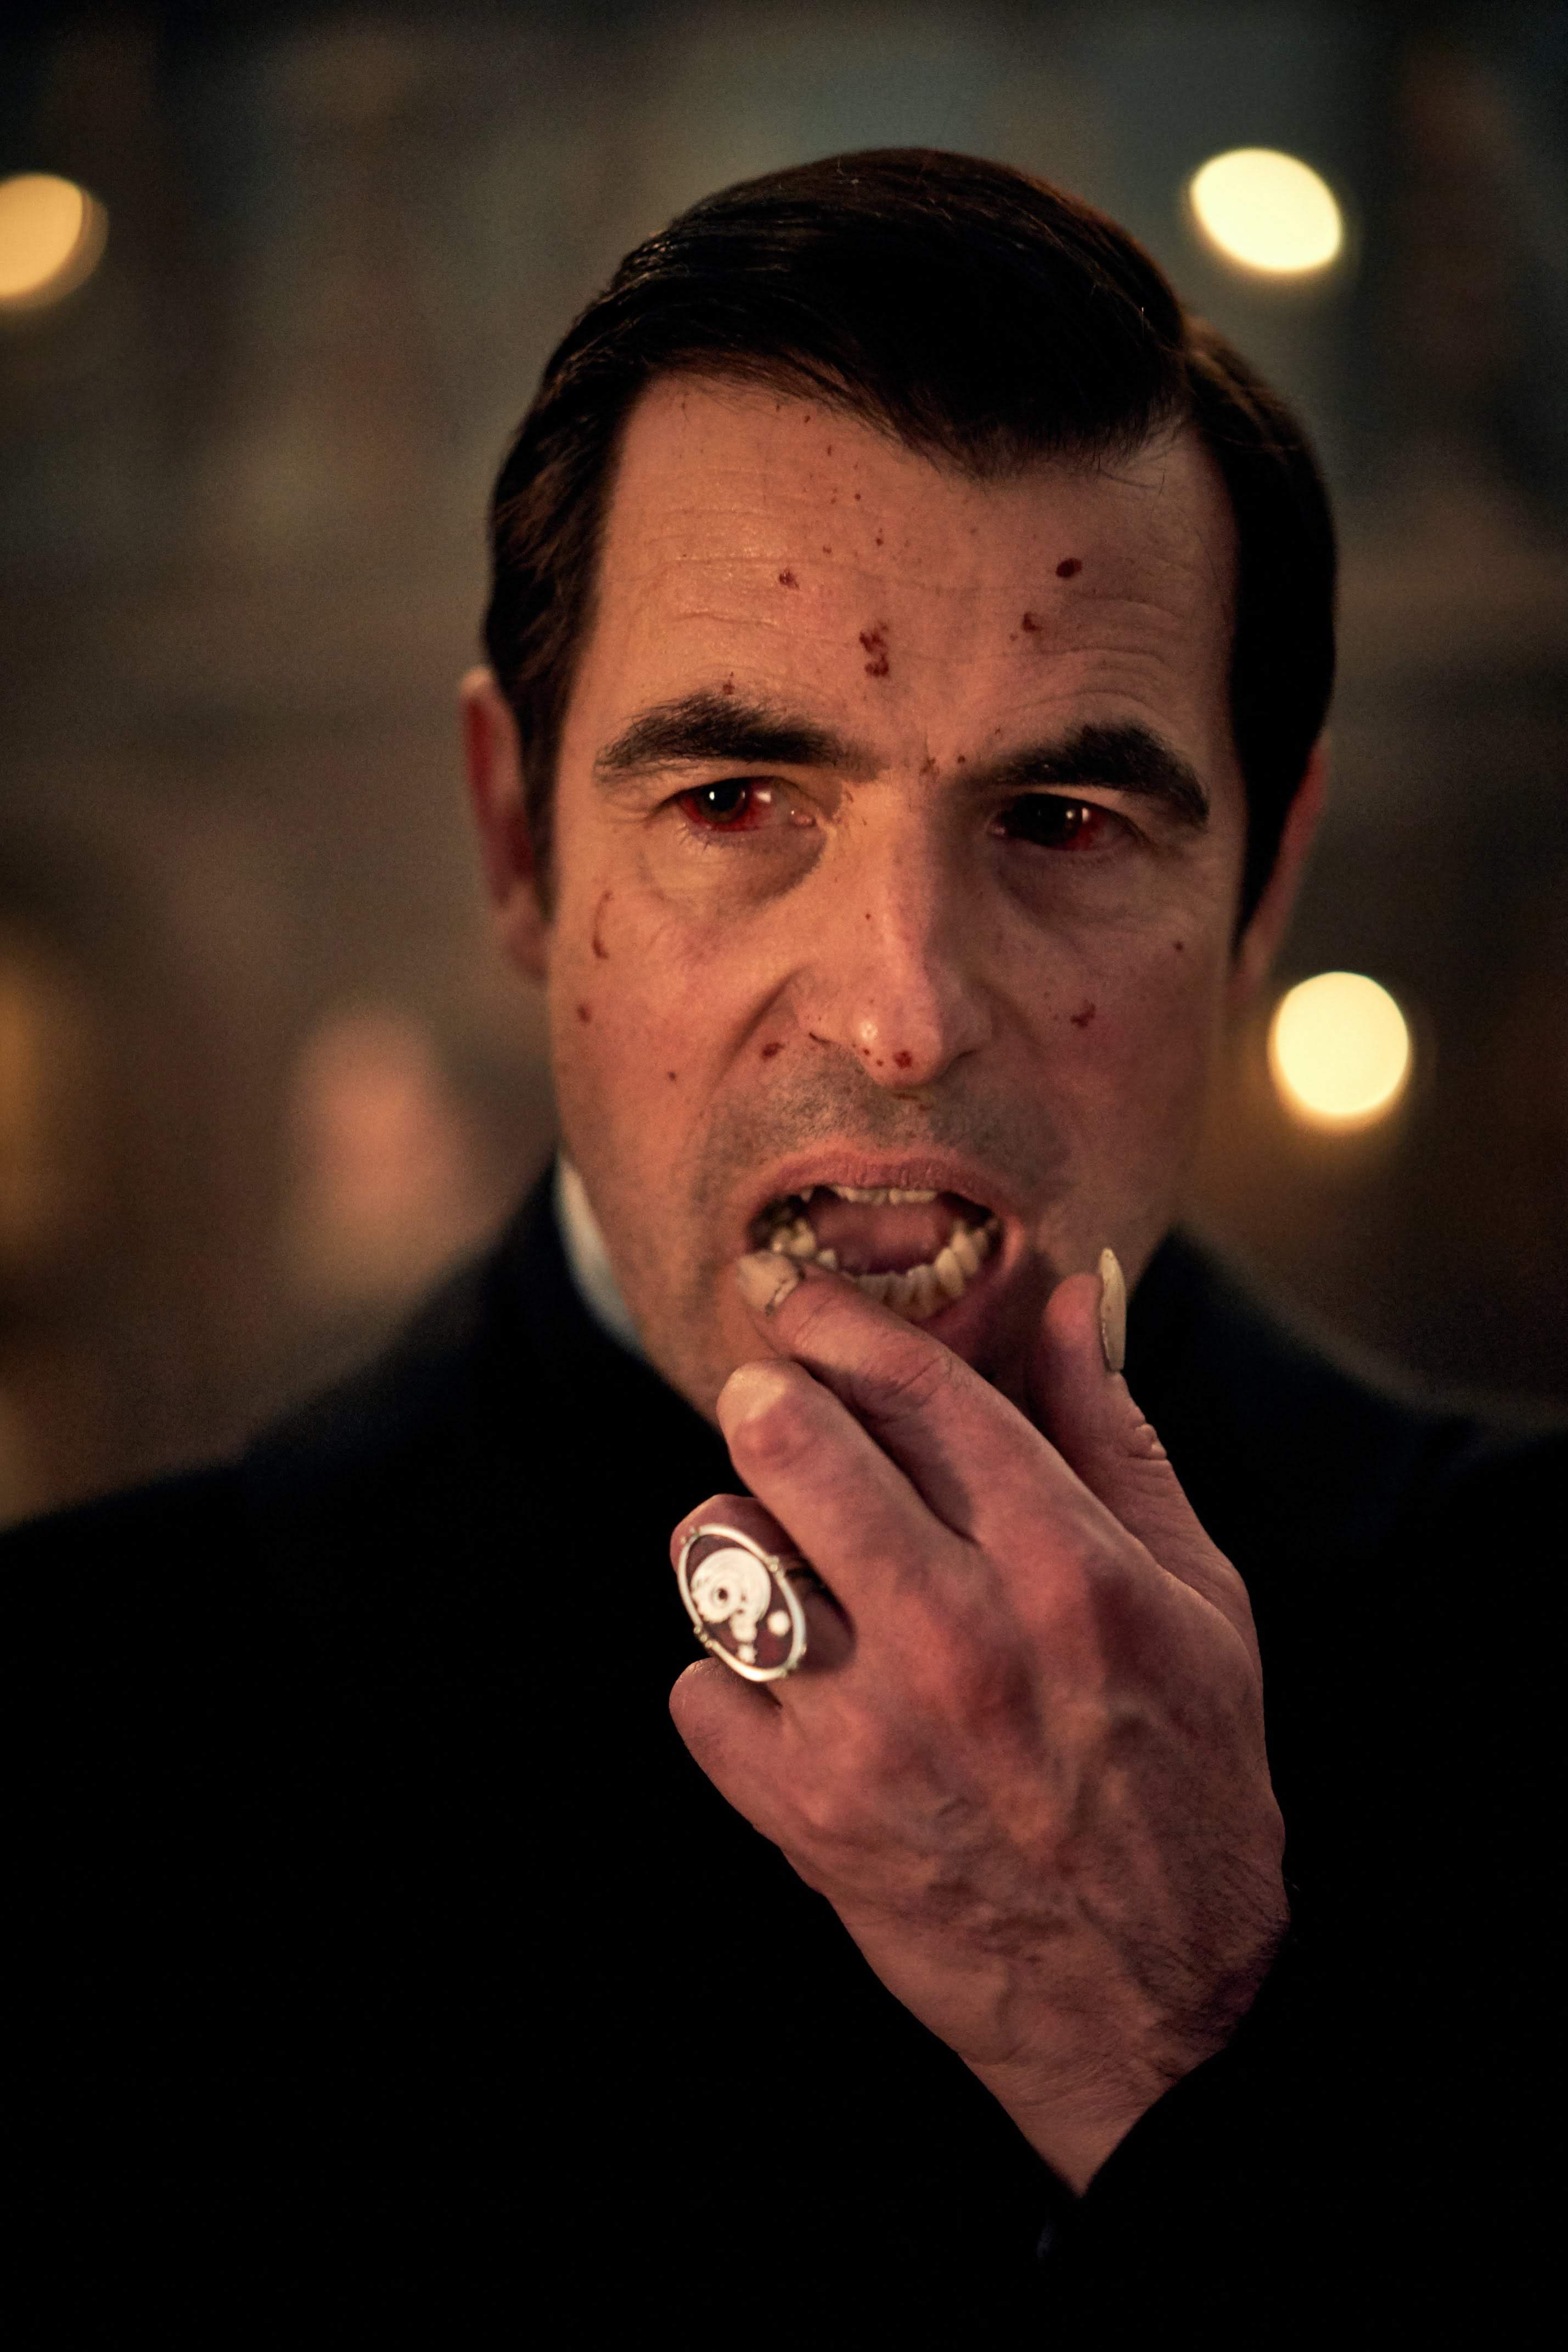 Dracula : 人気TVシリーズ「シャーロック」の仕掛け人たちが、故ブラム・ストーカーが世に送り出した吸血鬼を復活させた話題のミニ・シリーズ「ドラキュラ」の予告編を初公開 ! !